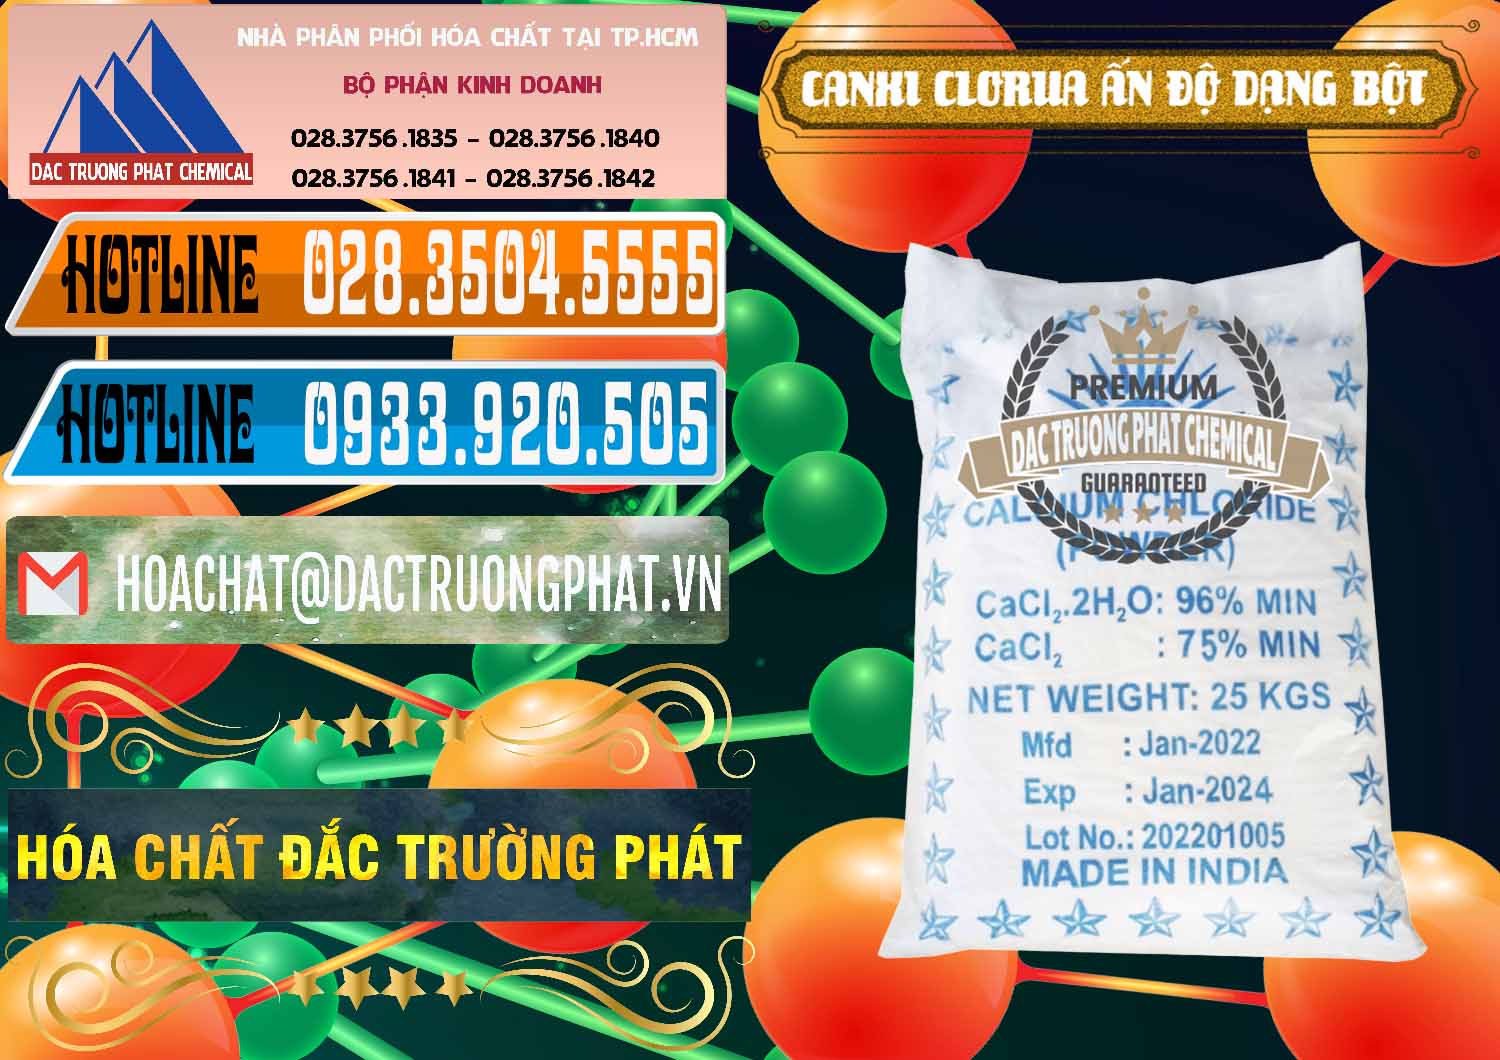 Đơn vị chuyên nhập khẩu ( bán ) CaCl2 – Canxi Clorua 96% Dạng Bột Ấn Độ India - 0420 - Cty chuyên cung ứng & phân phối hóa chất tại TP.HCM - stmp.net